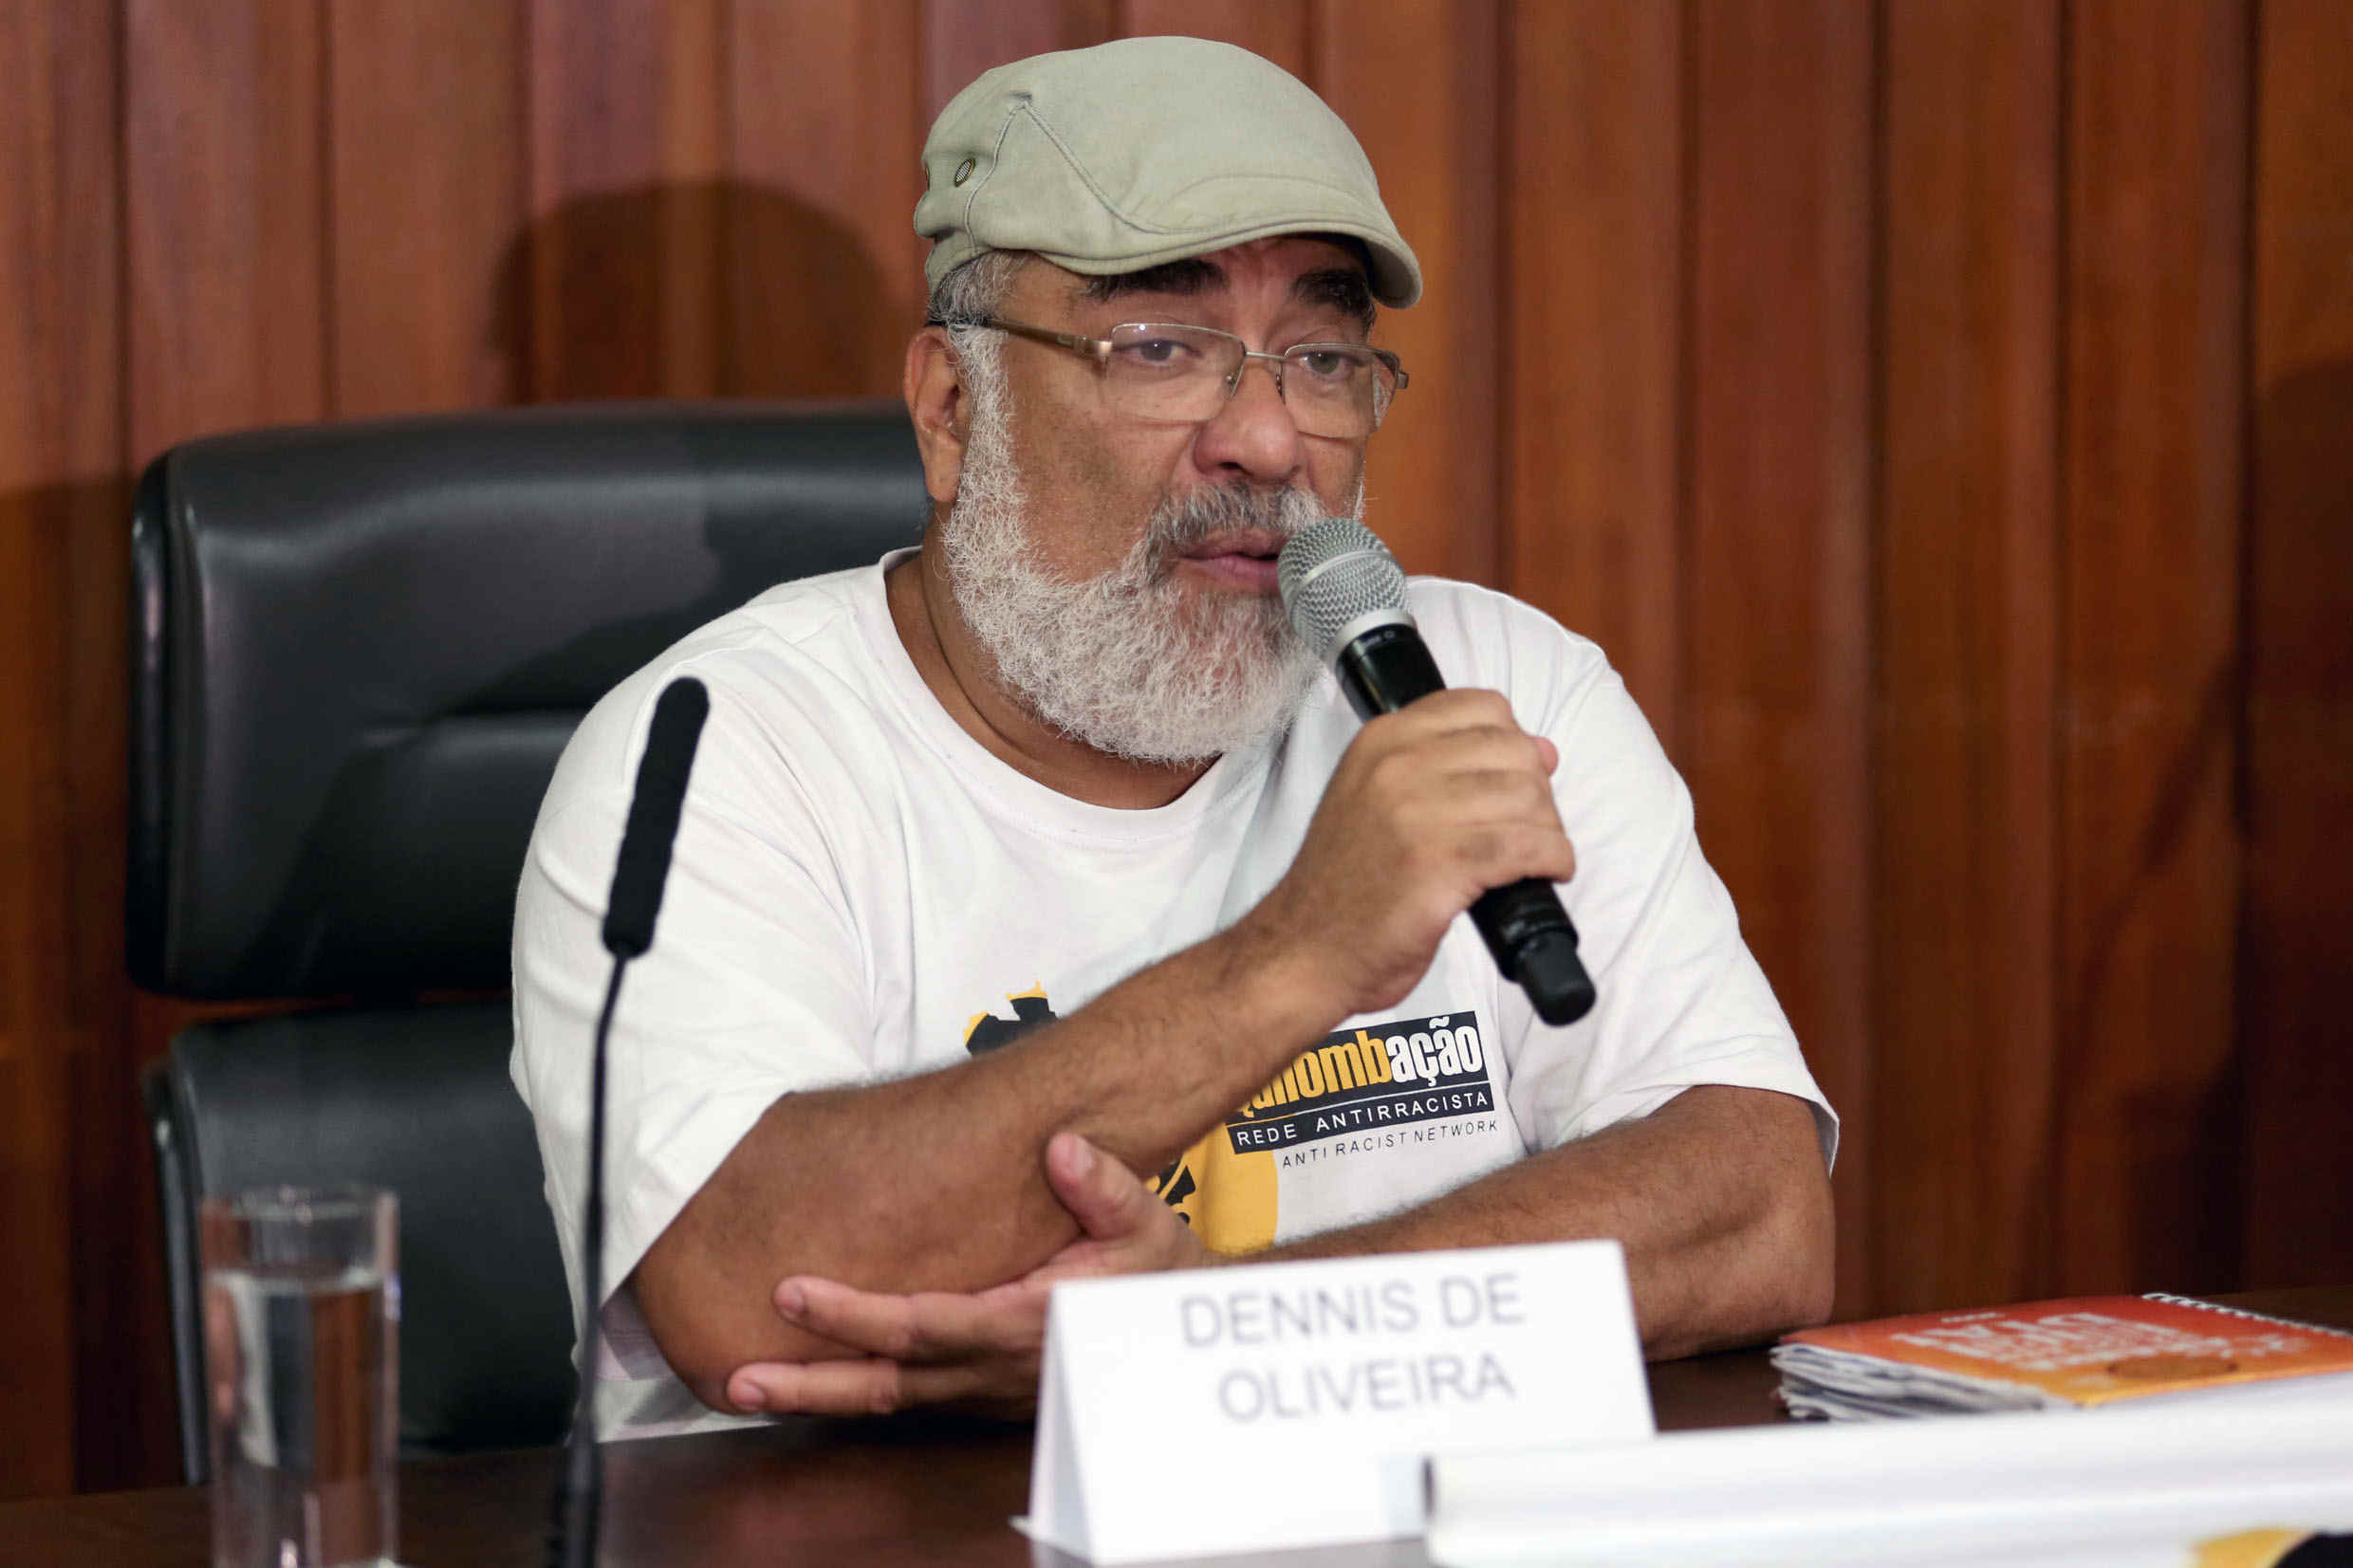 Dennis de Oliveira USP